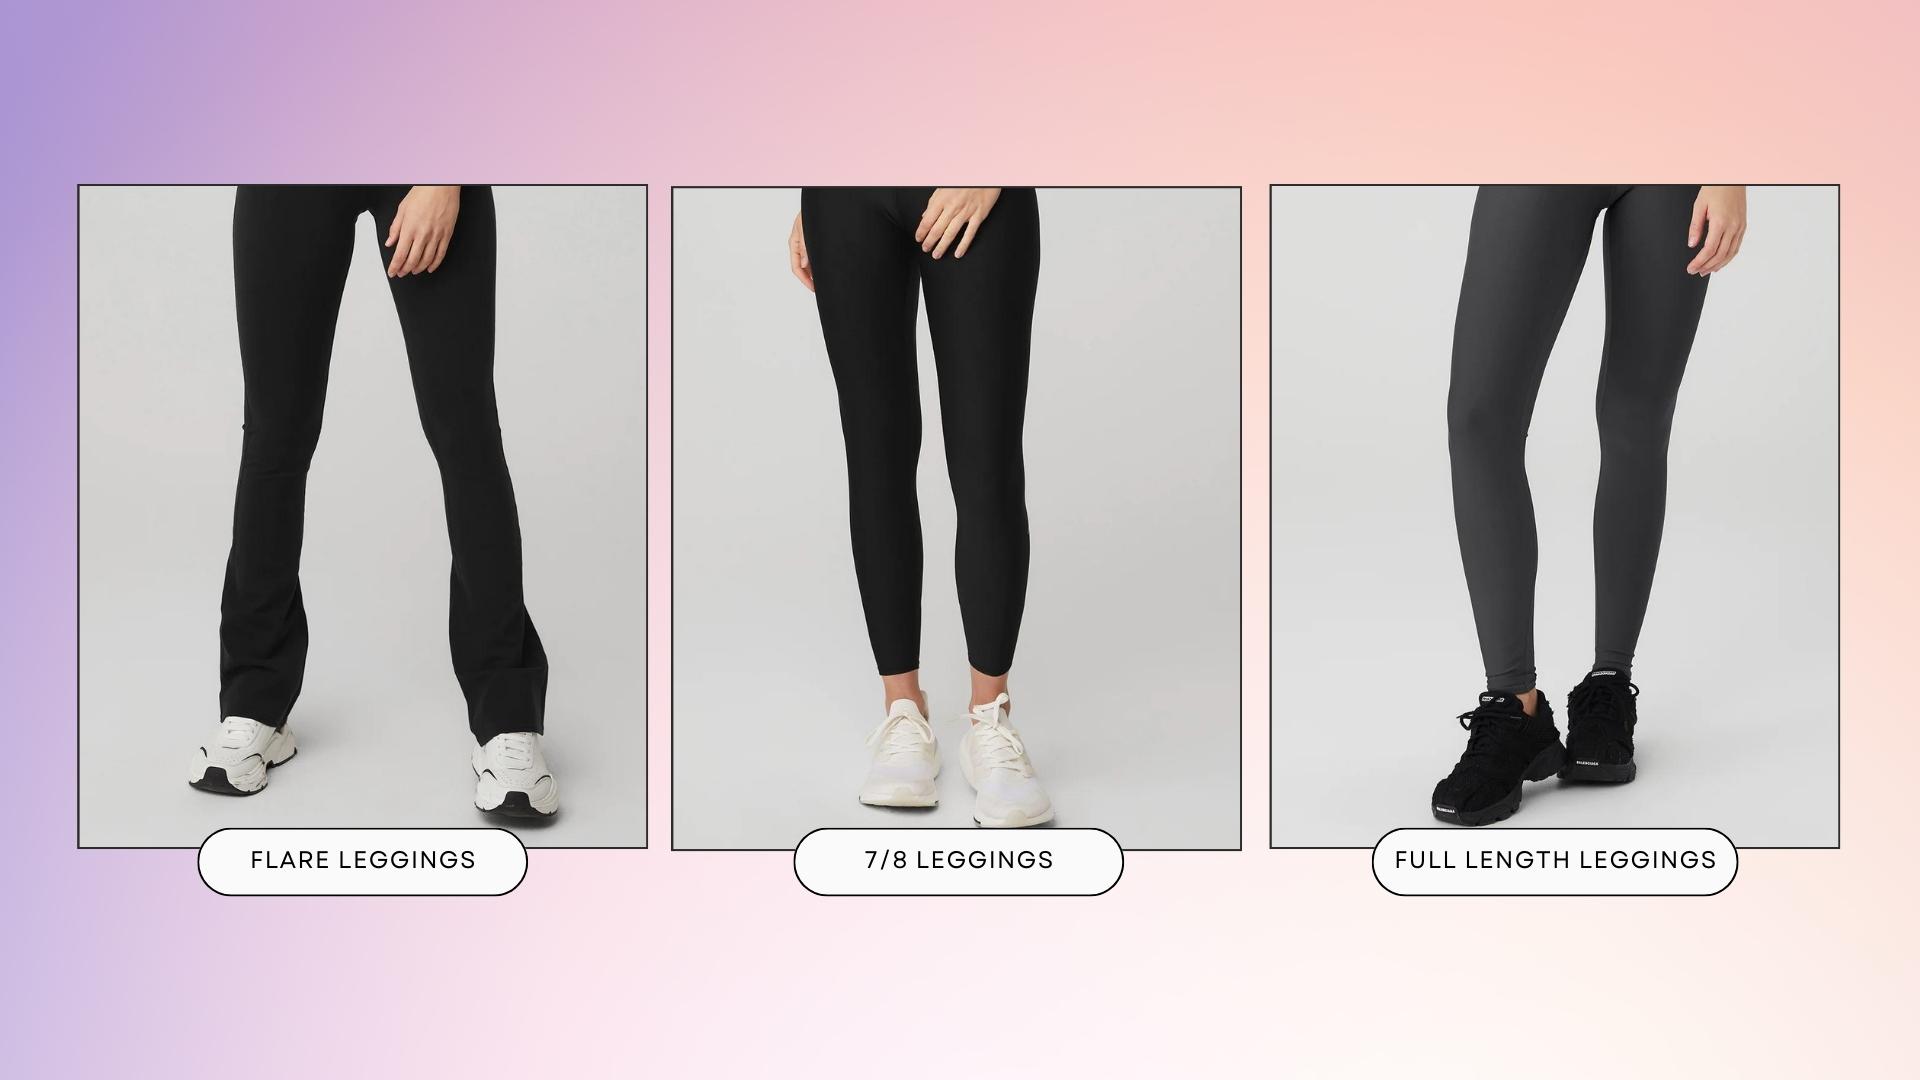 What are 7/8 length leggings? - Quora